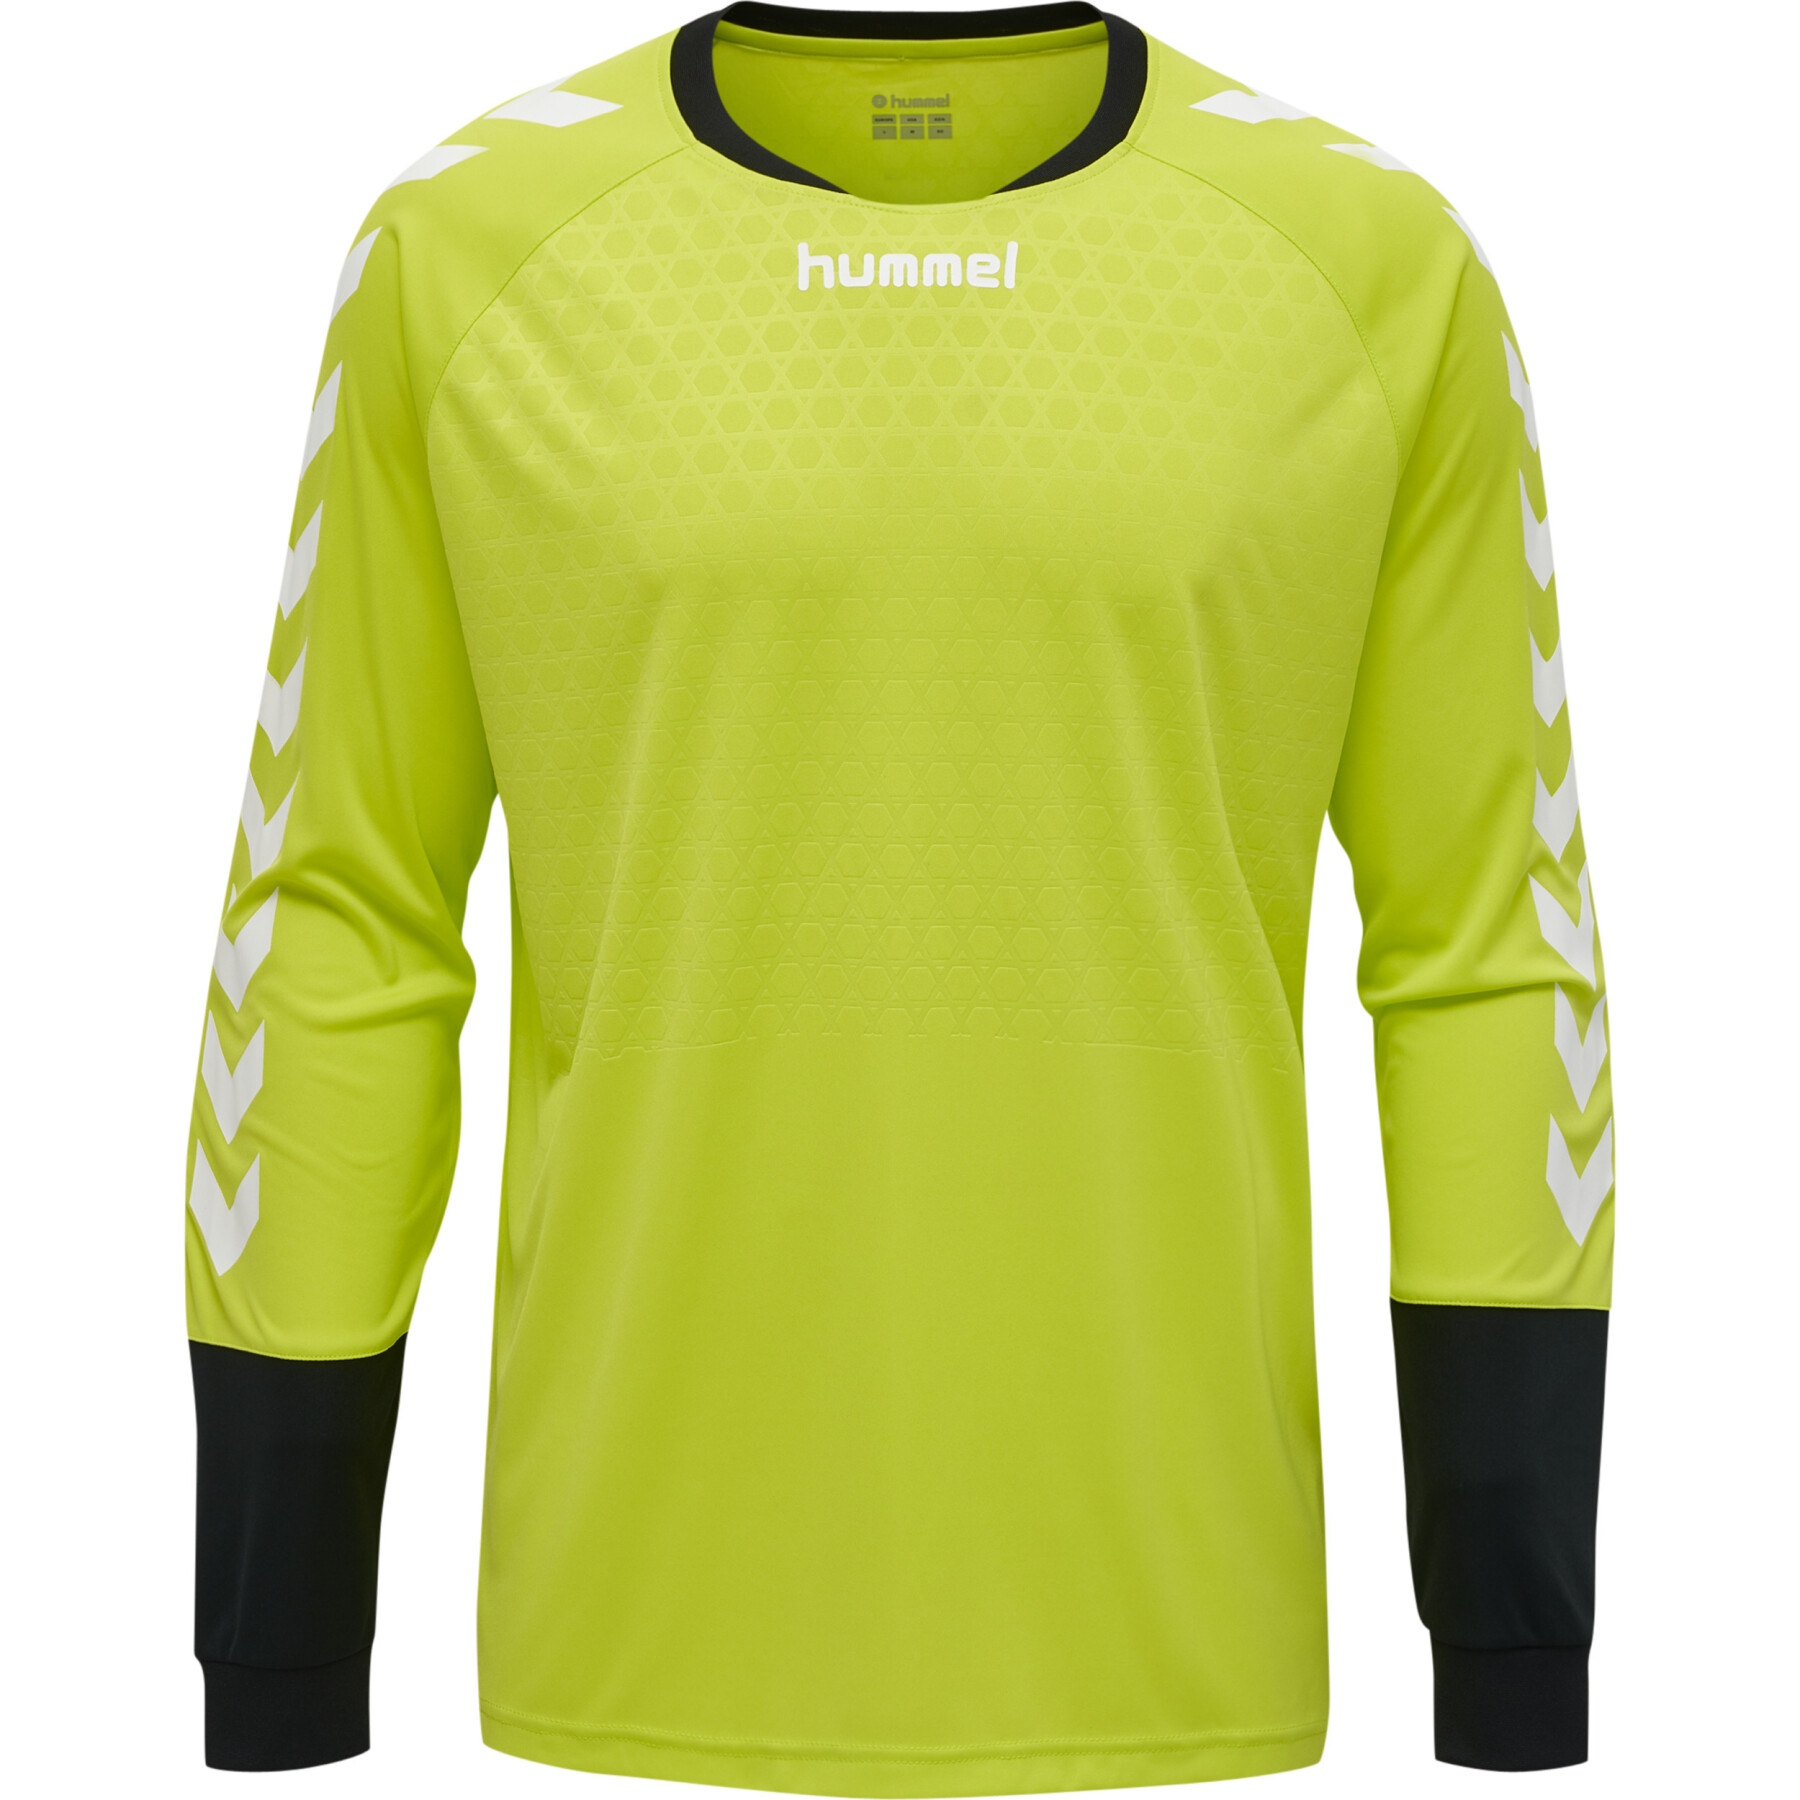 camisetas e tops : Hummel Brasil - Vendendo Hummel ropa, As Hummel camisas  são sempre a sua primeira escolha.